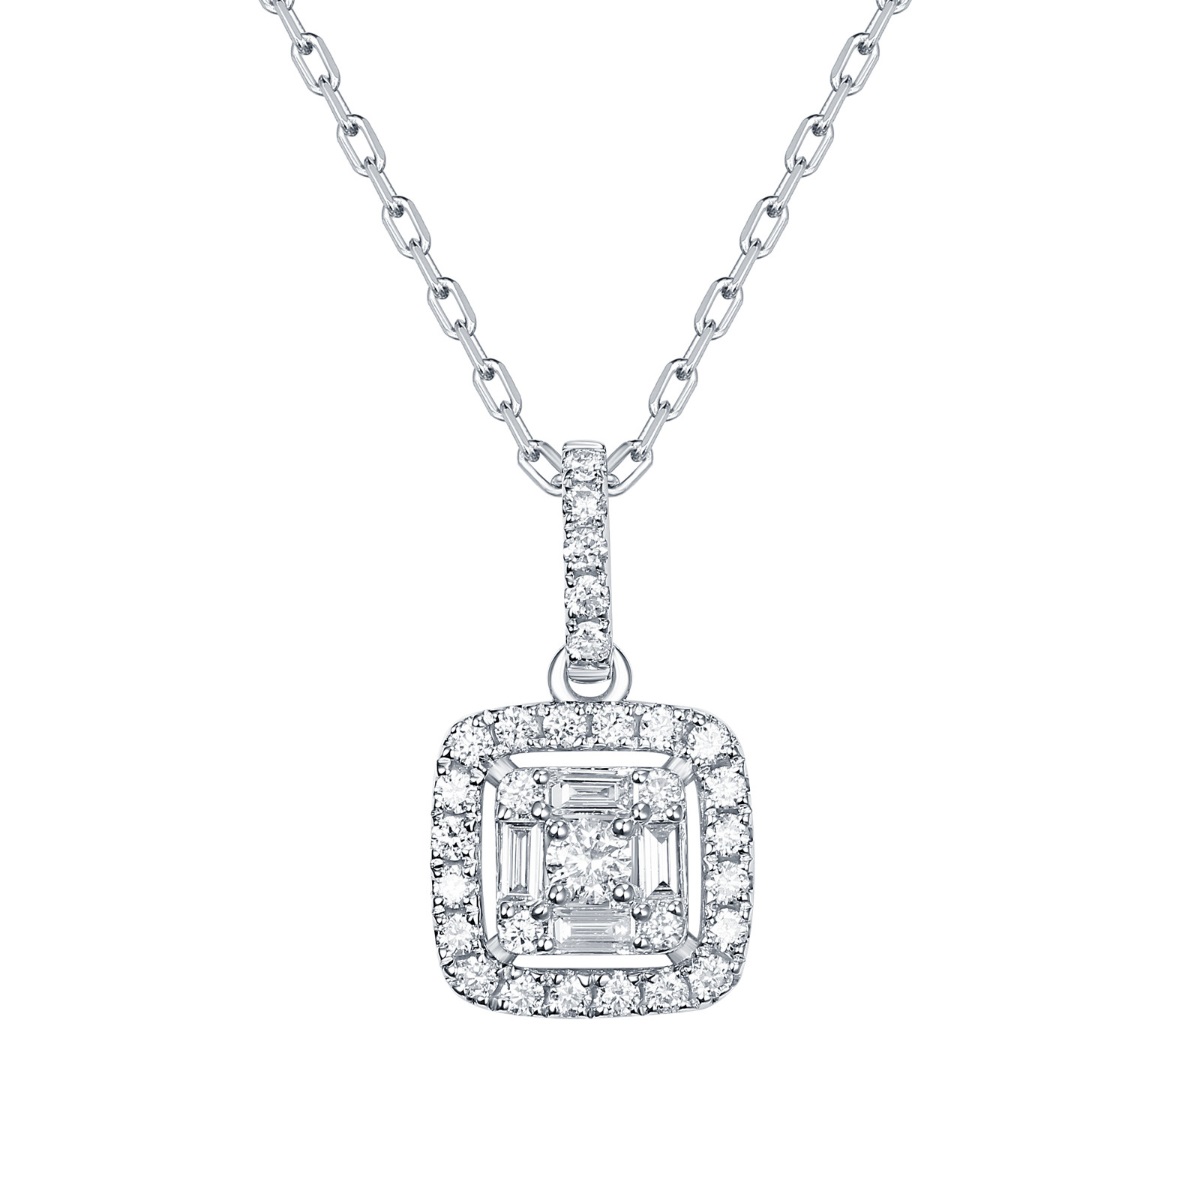 P36435WHT – 18K White Gold Diamond Pendant, 0.35 TCW